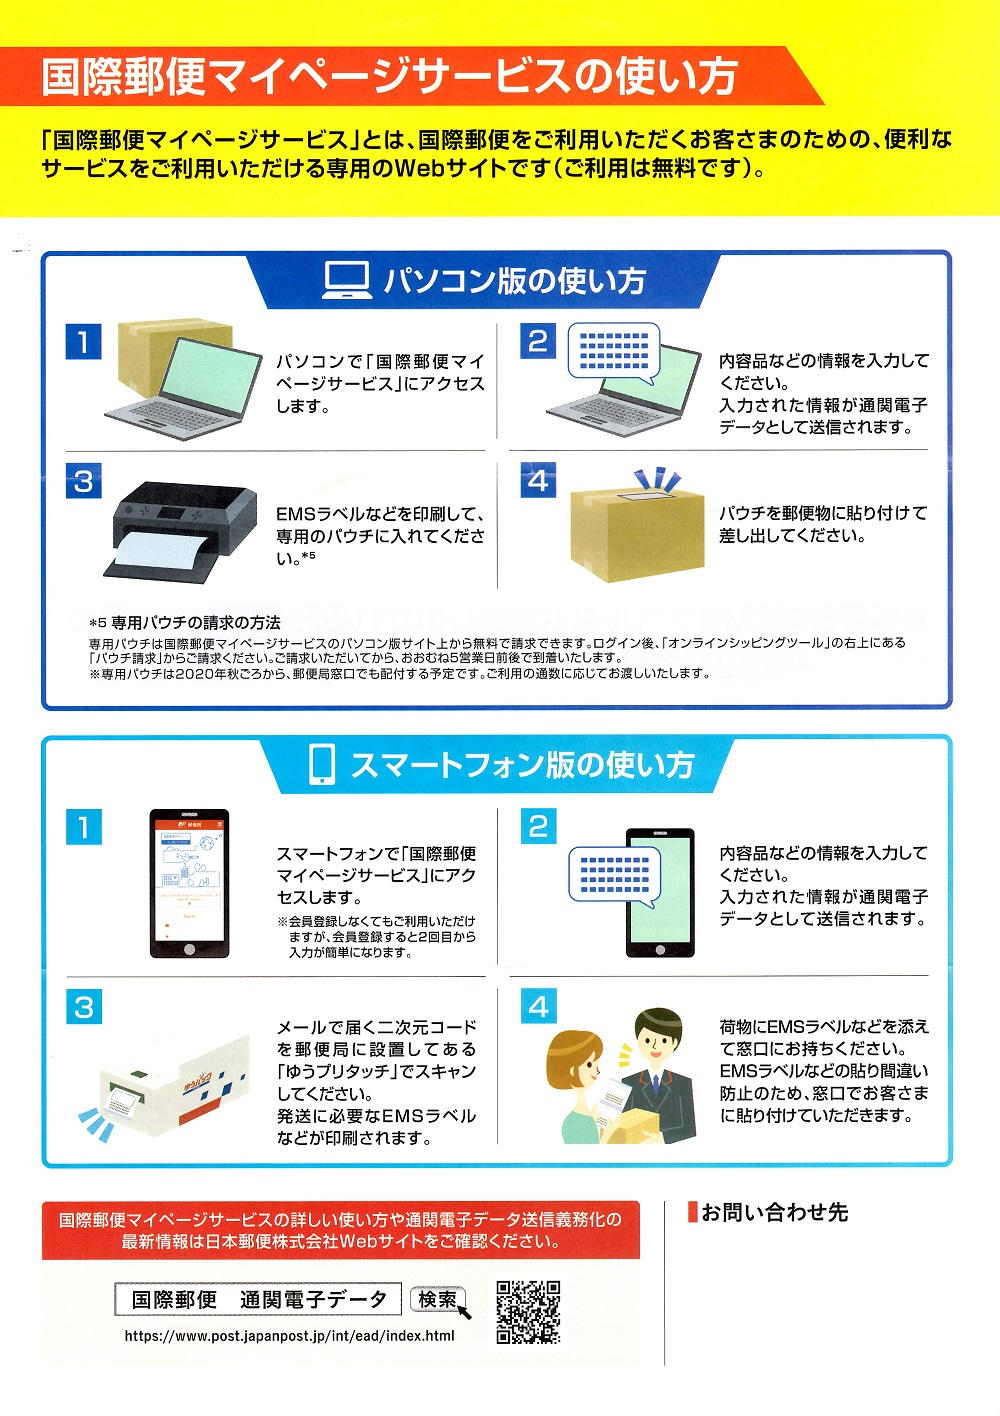 【参考資料】日本郵便の「国際郵便マイページサービス」告知パンフレット